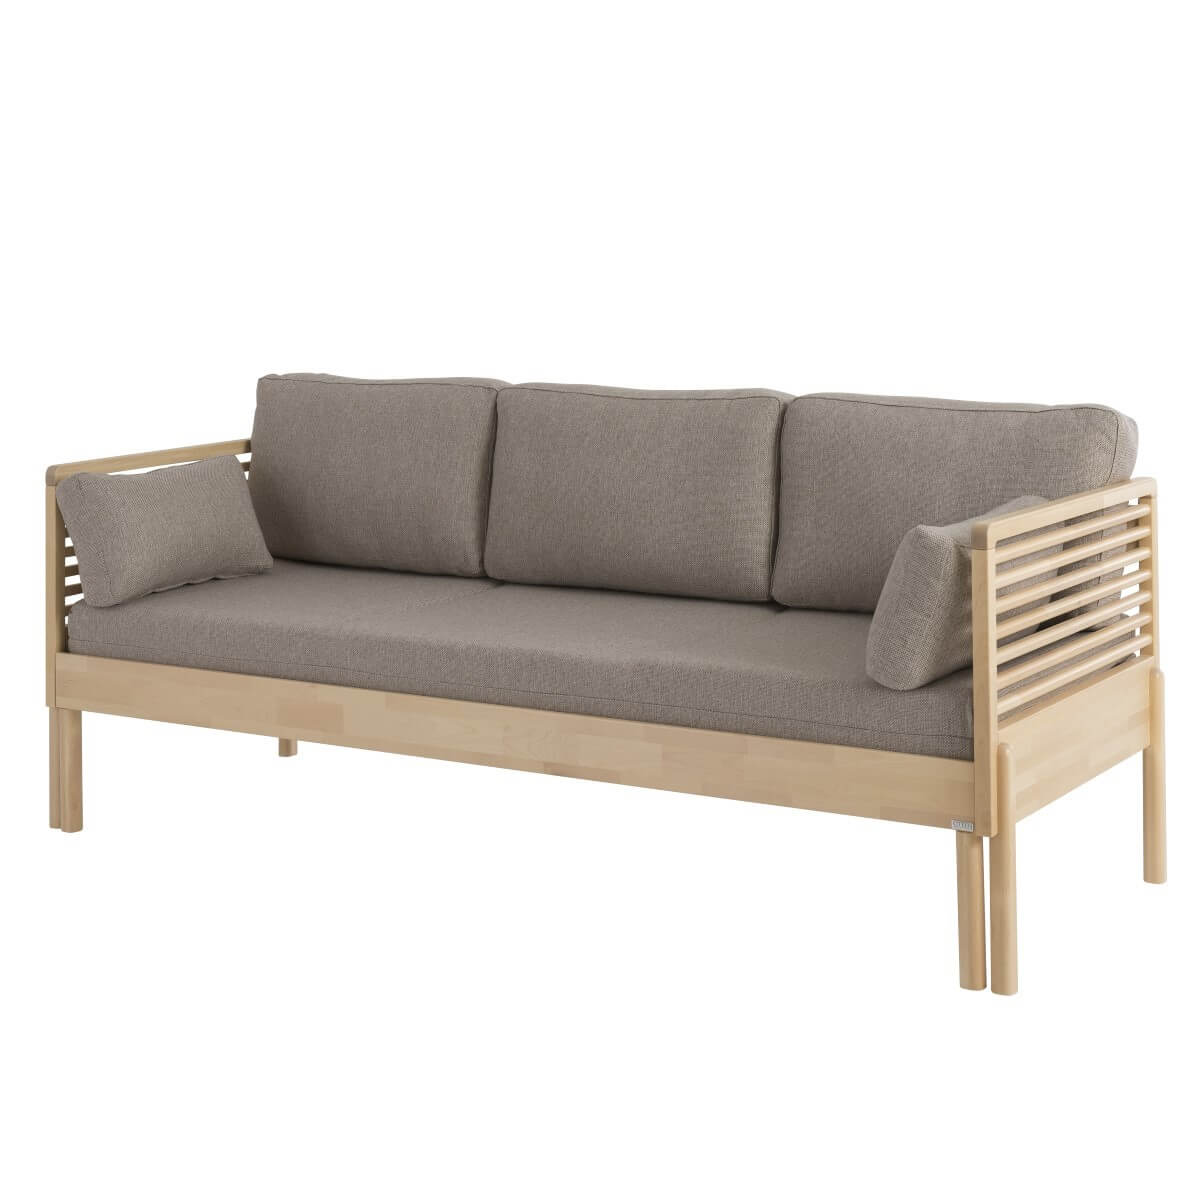 Nowoczesna sofa z funkcją spania LENNU z drewna brzozy skandynawskiej z beżowym materacem. Wysokie drewniane nóżki